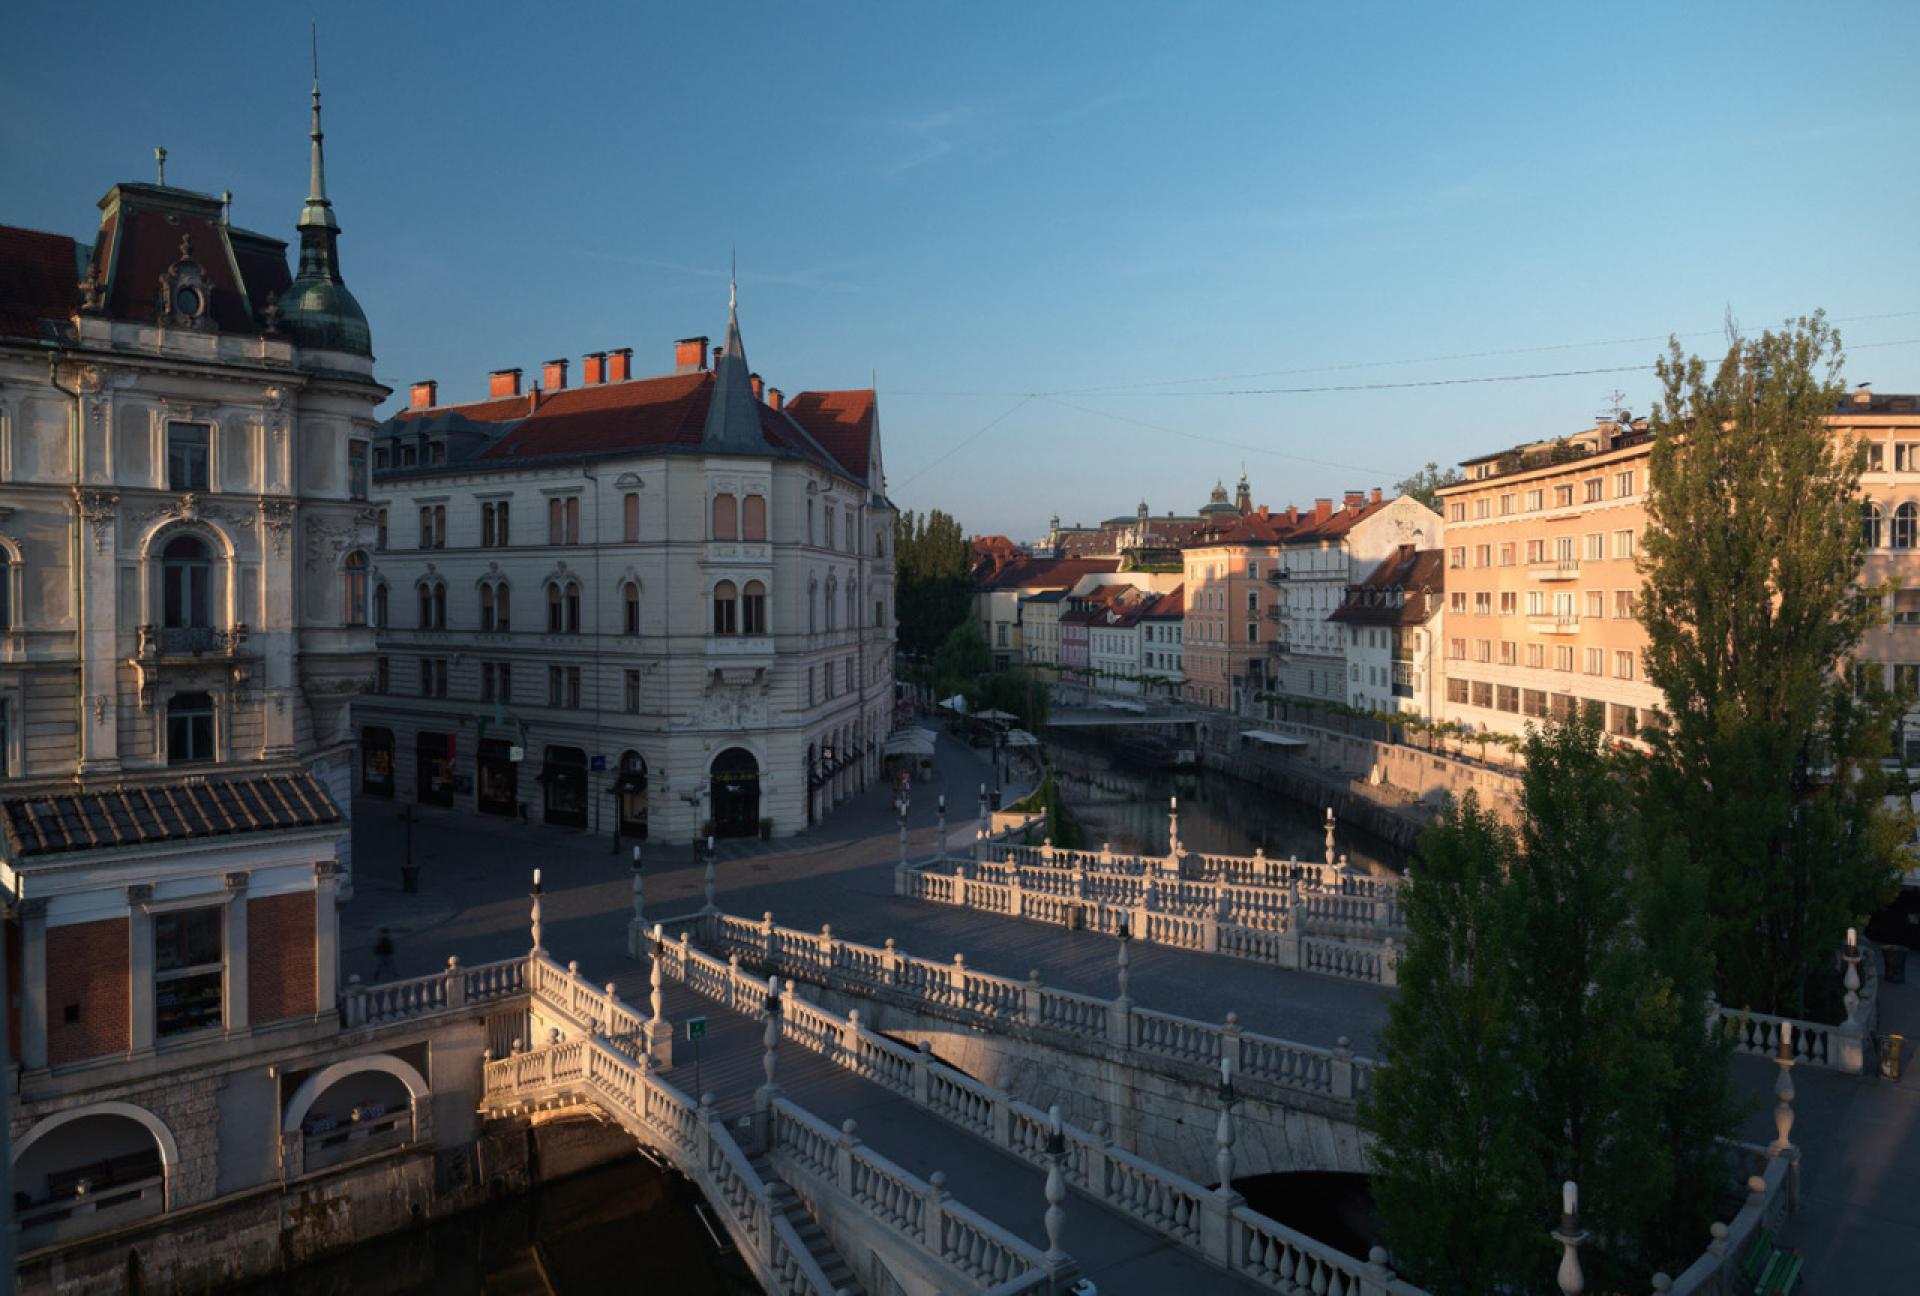 Triple Bridge in the historical city center of Ljubljana. | Photo by Matevž Paternoster, MGML